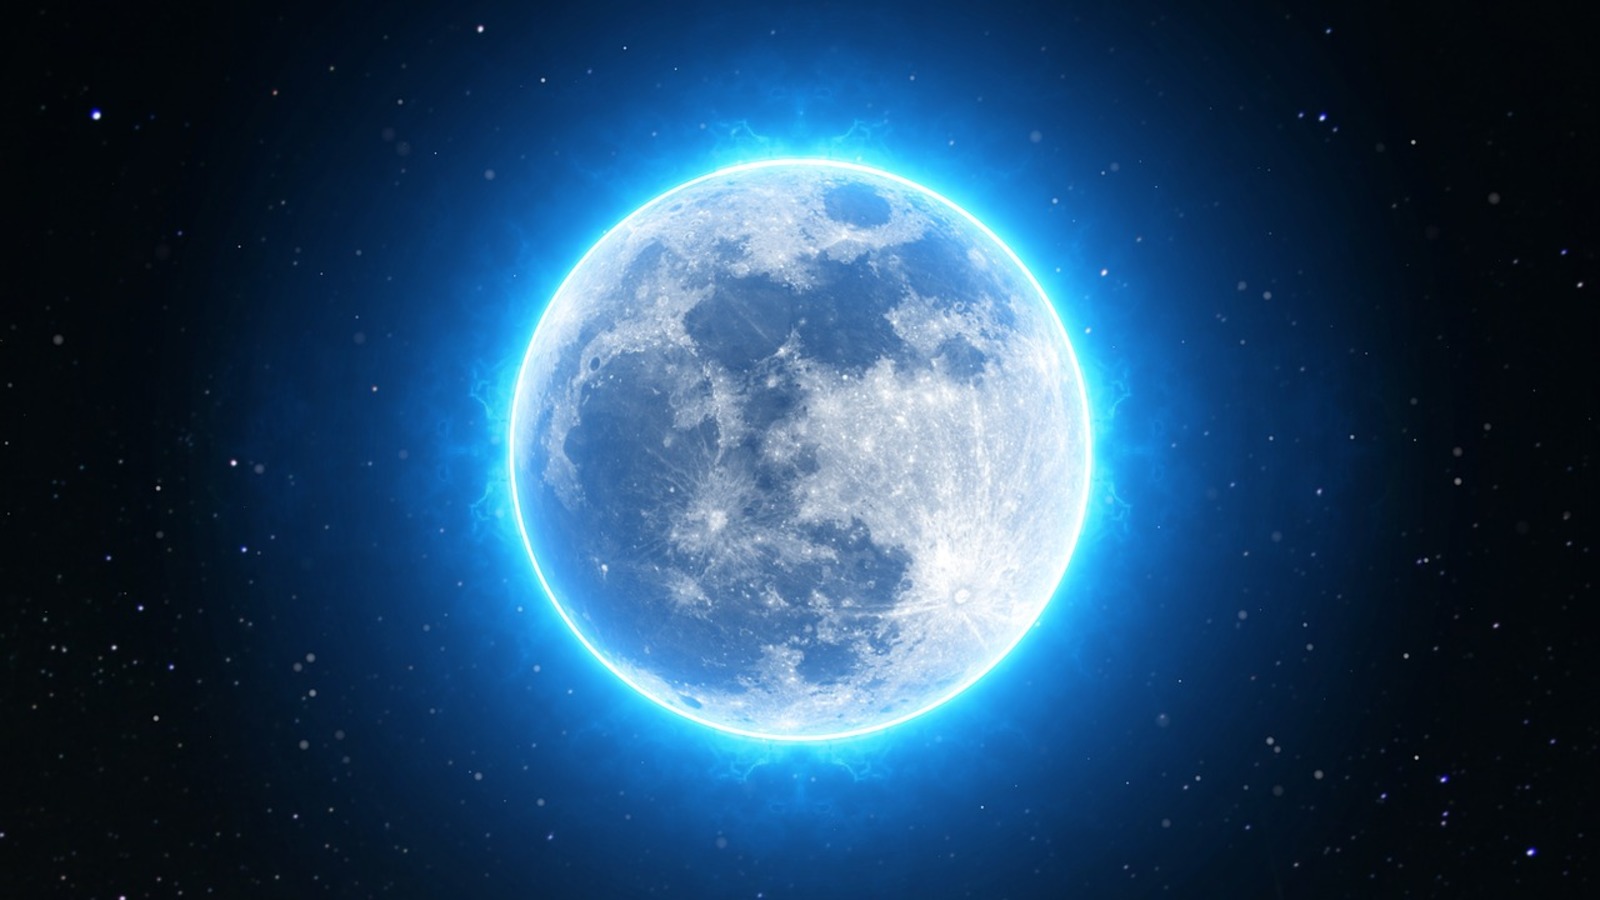 Образцы породы с Луны — реголита — впервые были доставлены на нашу планету в результате экспедиции американских астронавтов «Аполлон-11» в июле 1969 года